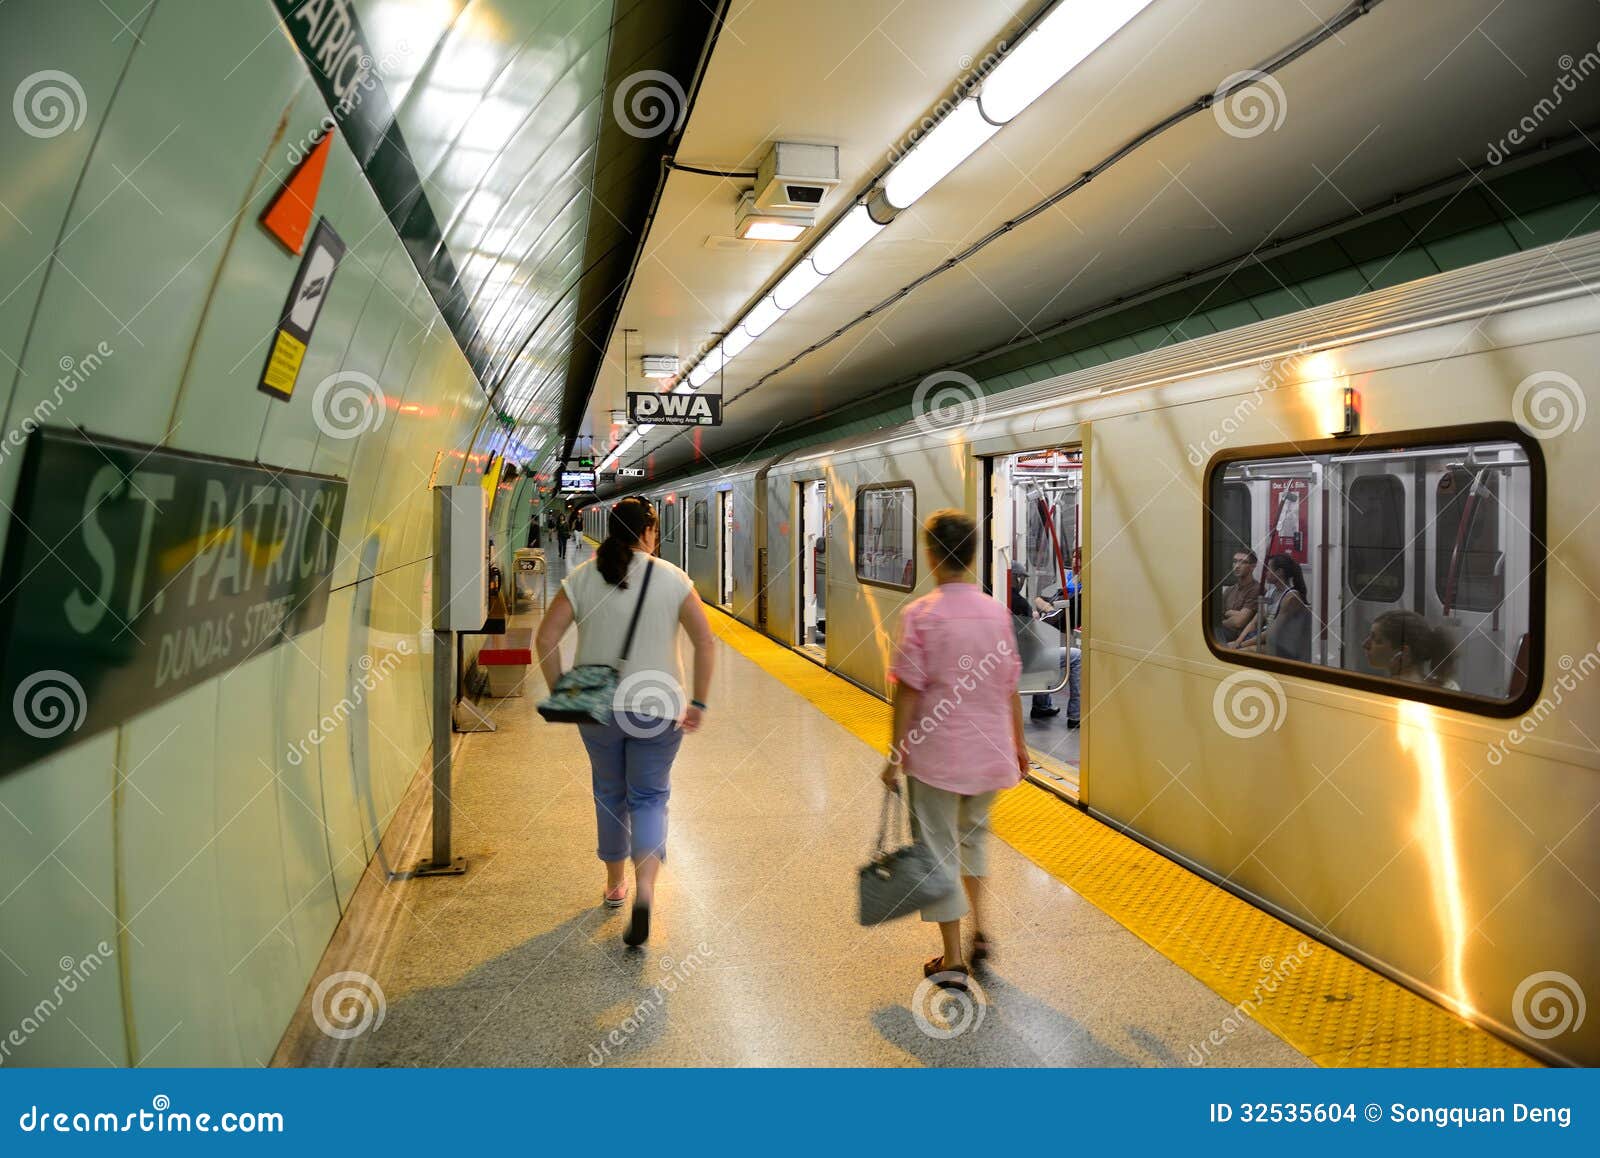 加拿大多伦多地铁线路图_运营时间票价站点_查询下载|地铁图